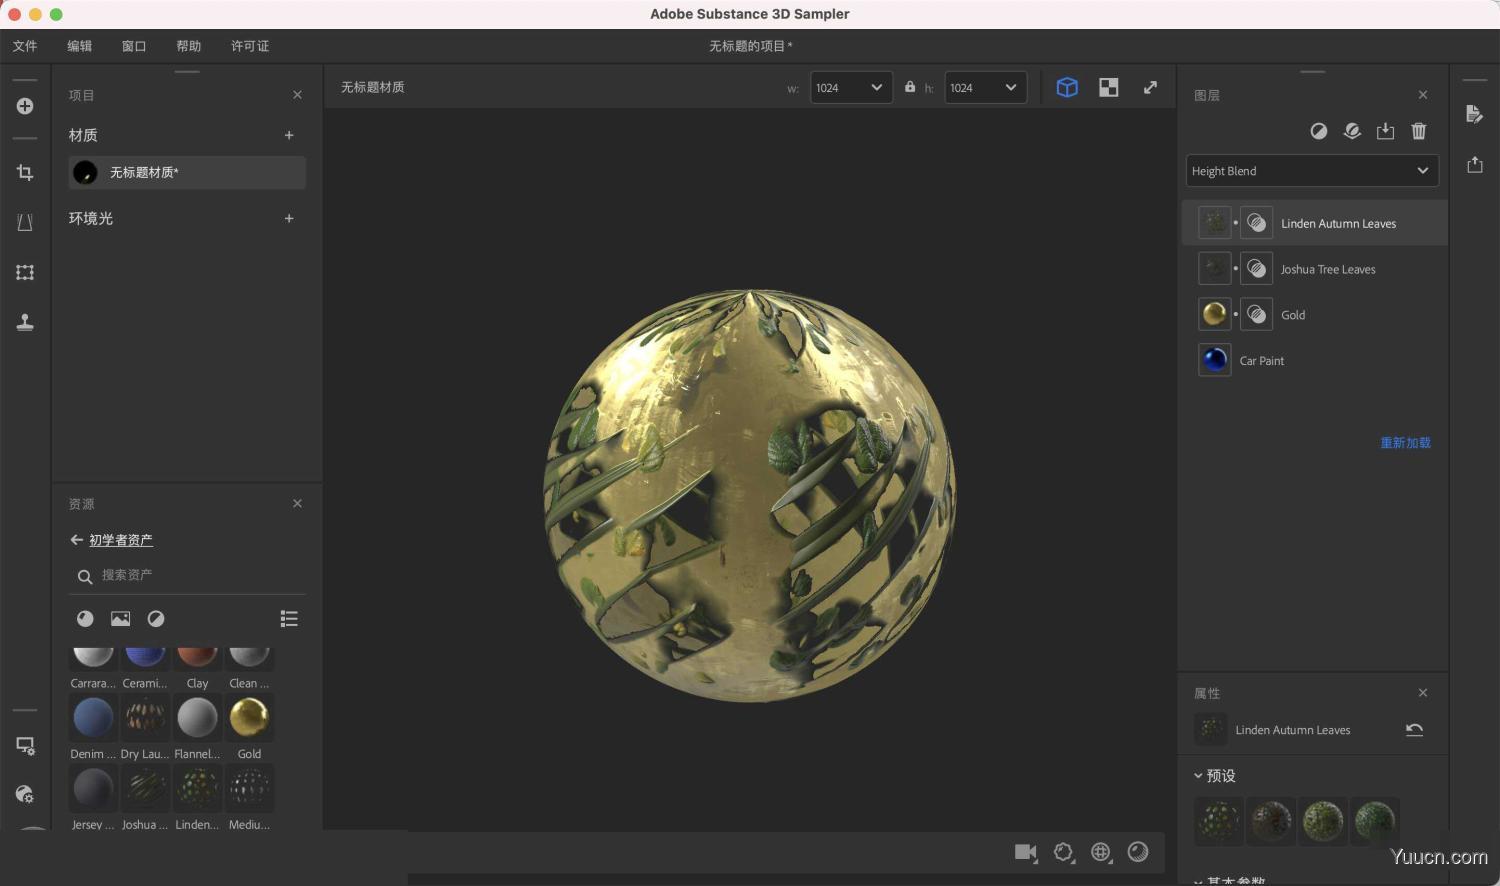 3D纹理应用程序Adobe Substance 3D Sampler for Mac v3.1.2 中/英文激活版